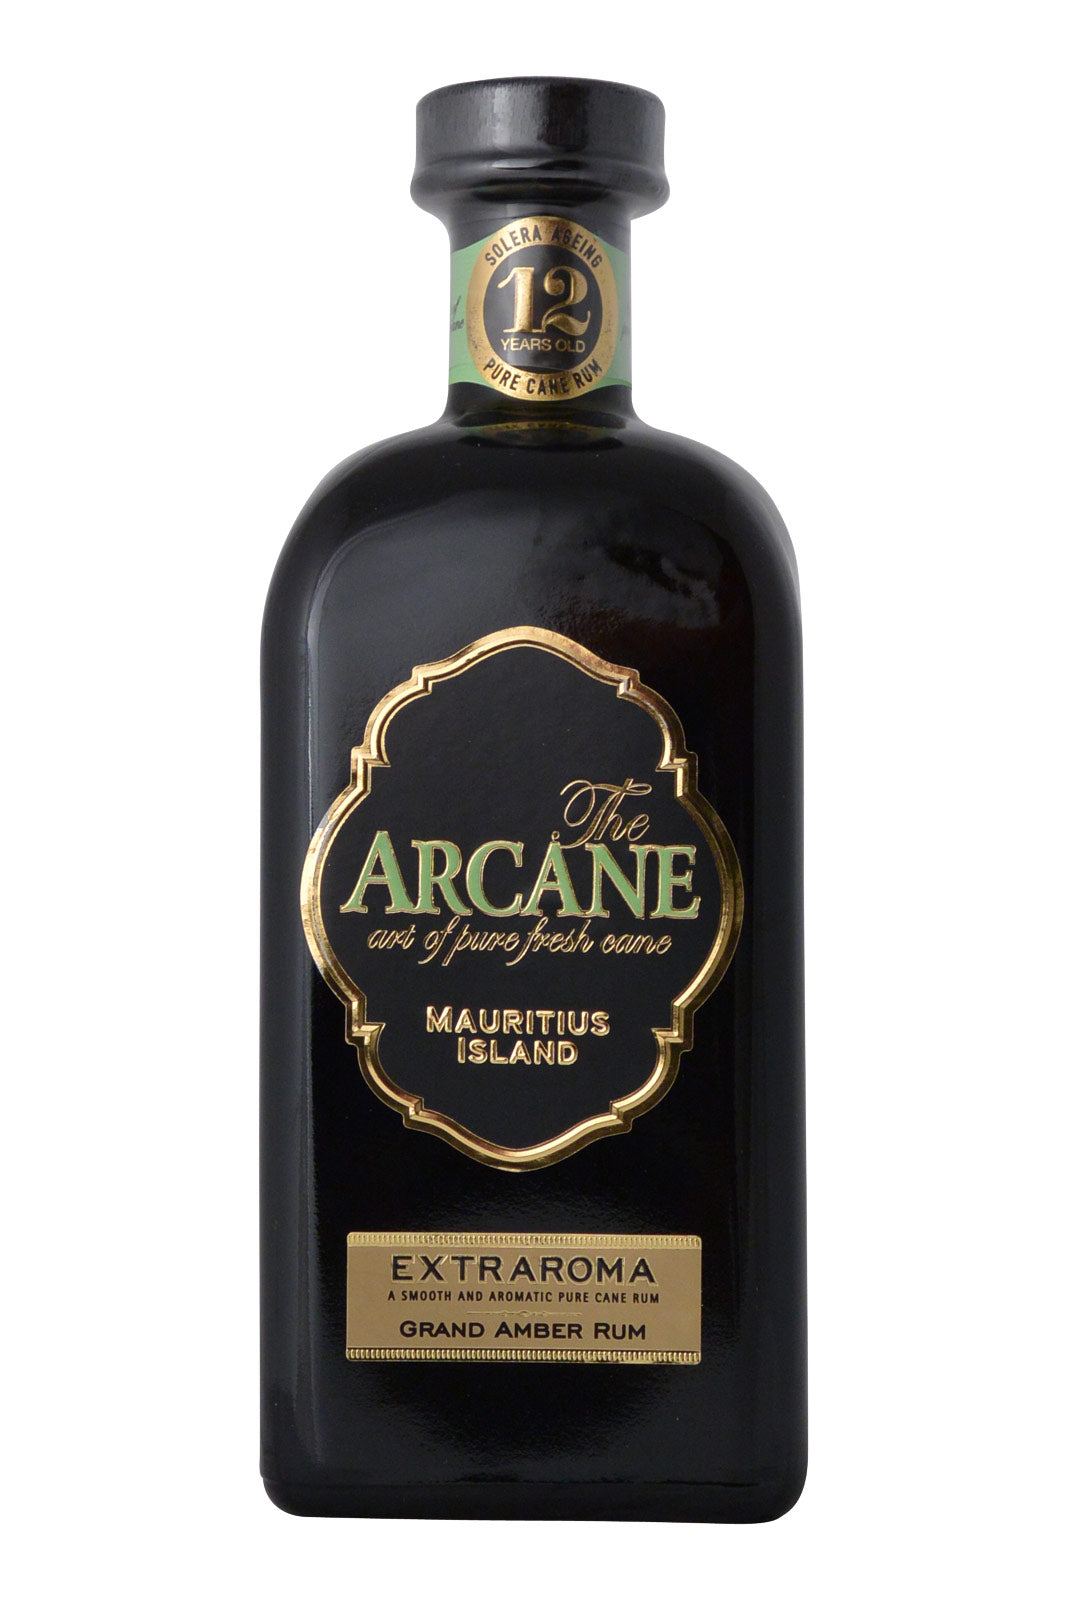 Arcane 12 Year Old Extraroma